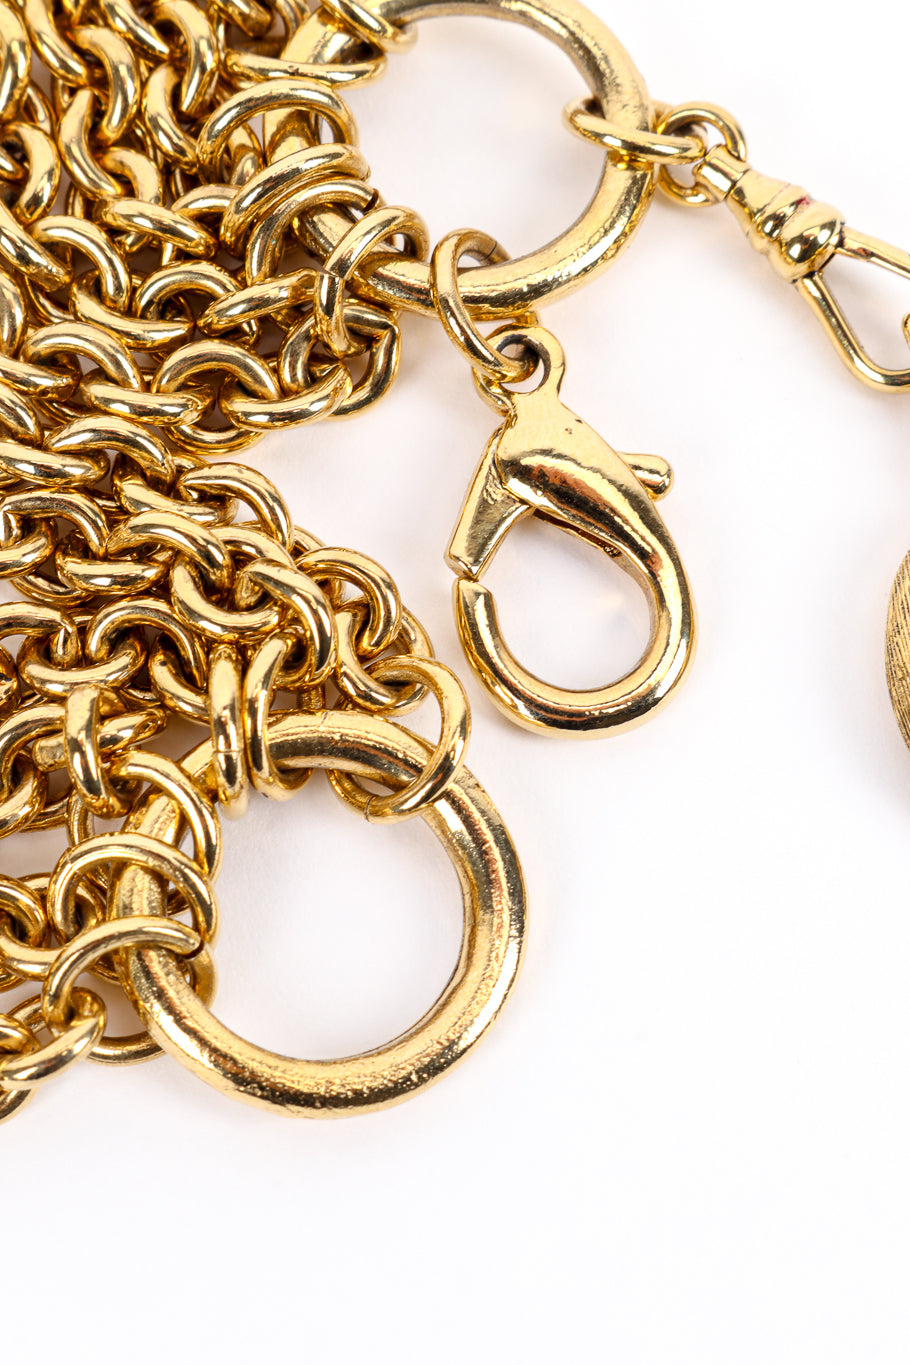 Vintage Carolee 6-Strand Rolo Link Necklace closure unclasped closeup @recess la